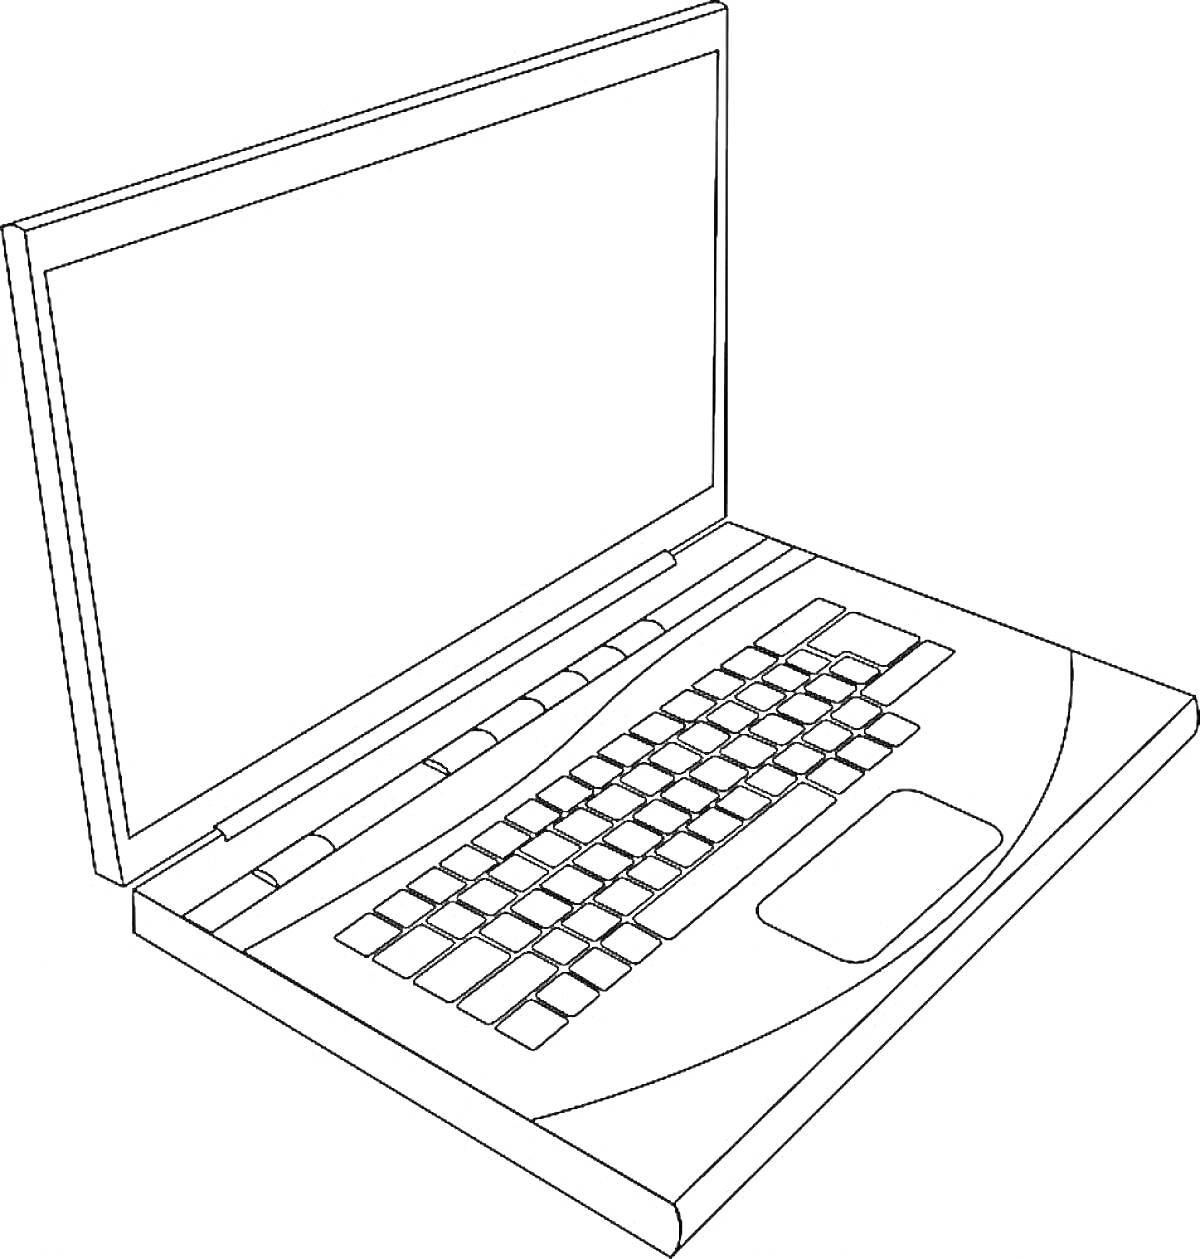 Раскраска Ноутбук с экраном, клавиатурой и тачпадом